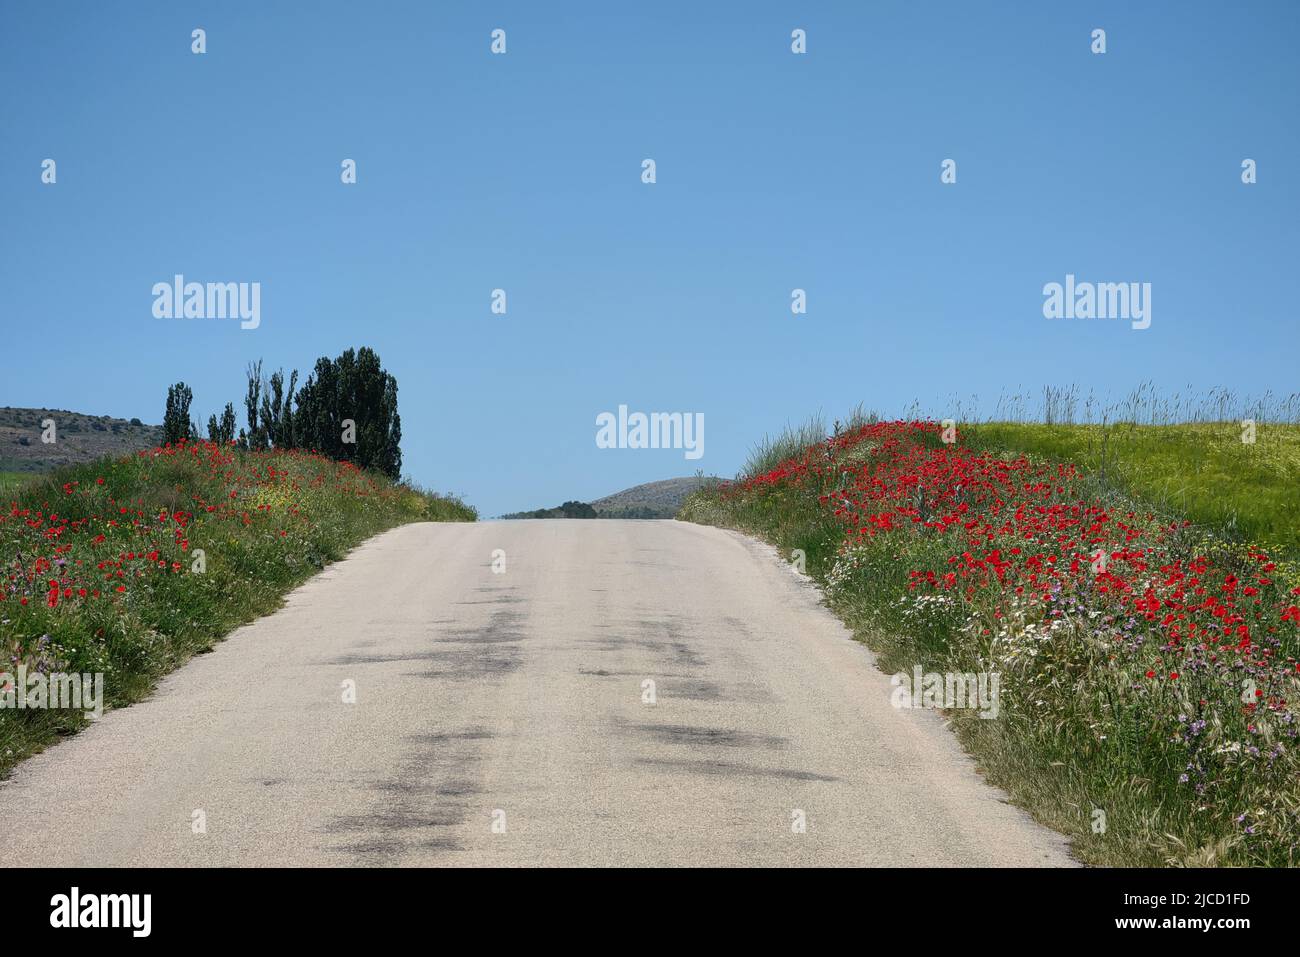 route rurale dans les champs avec des coquelicots et ce fantastique ciel bleu espagnol Banque D'Images